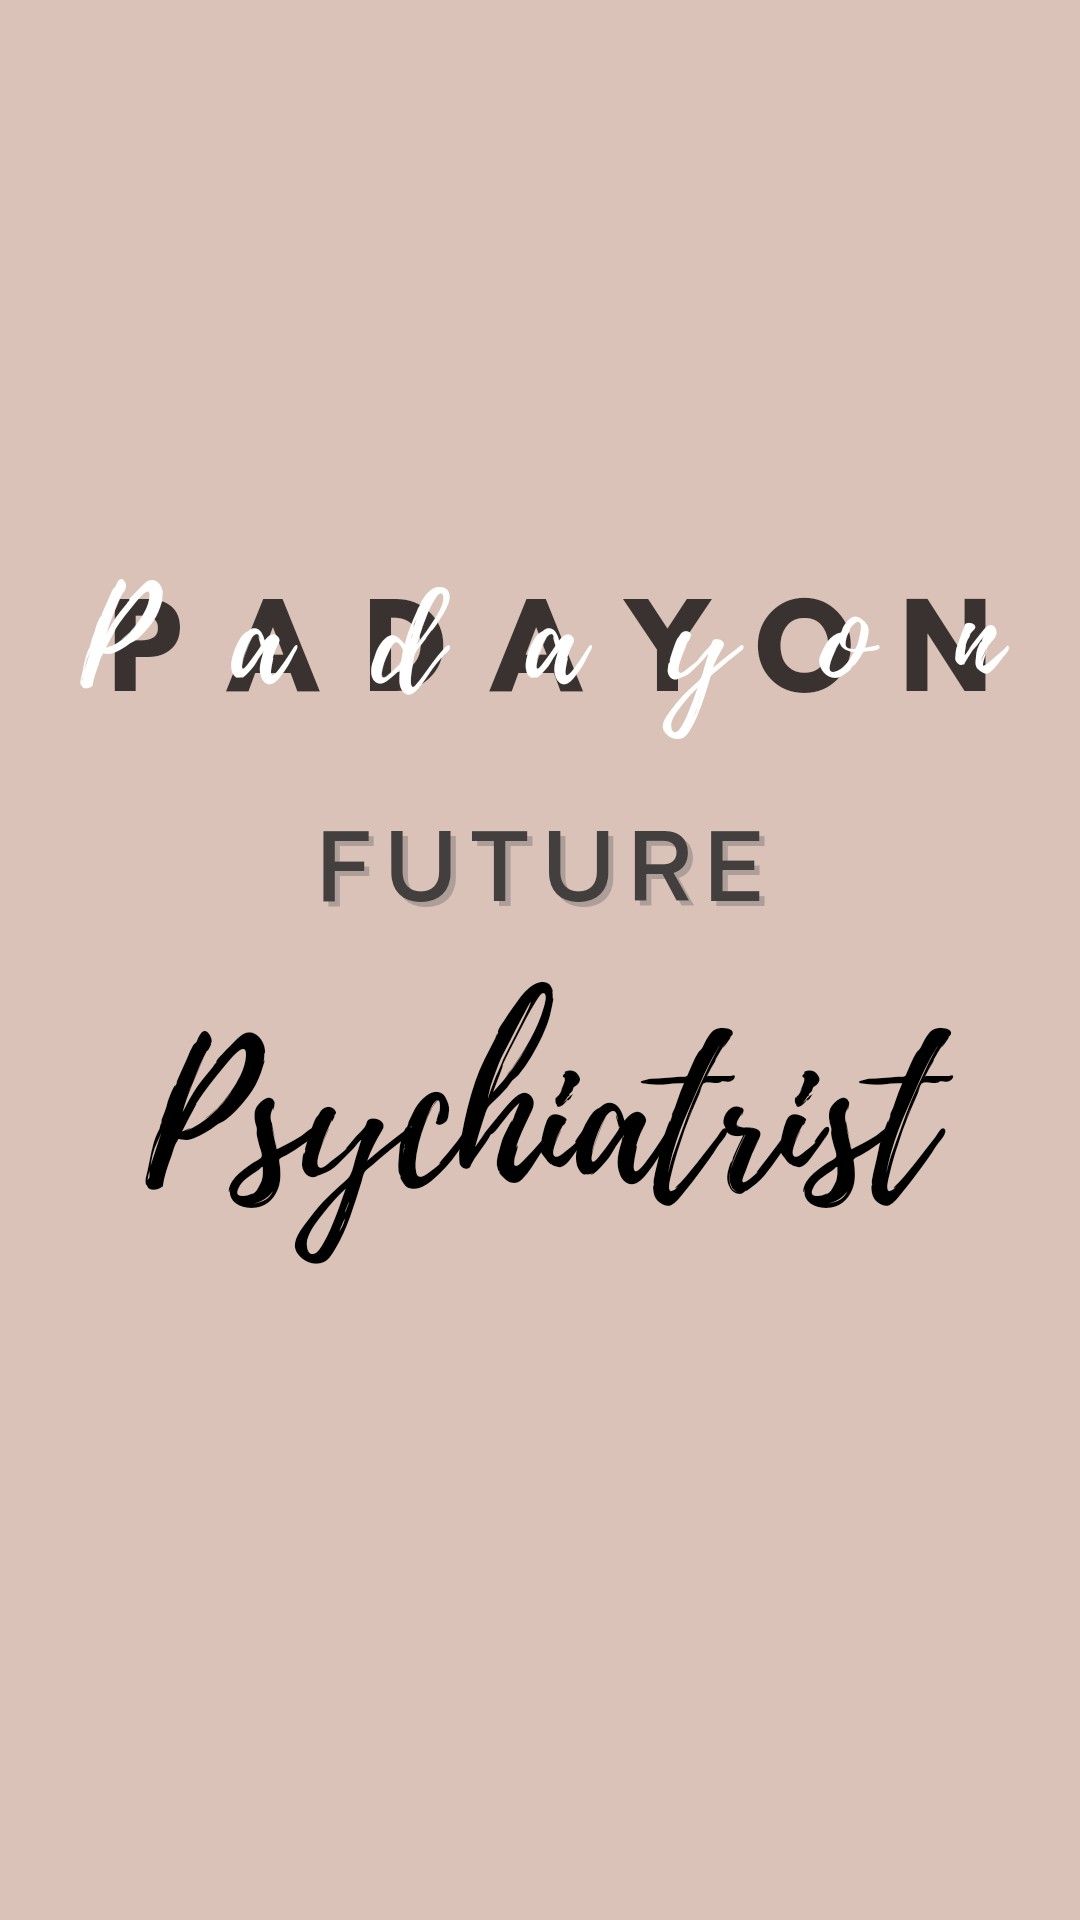 Aesthetic wallpaper for future psychiatrist. Psychology student, Psychology wallpaper, Psychology careers